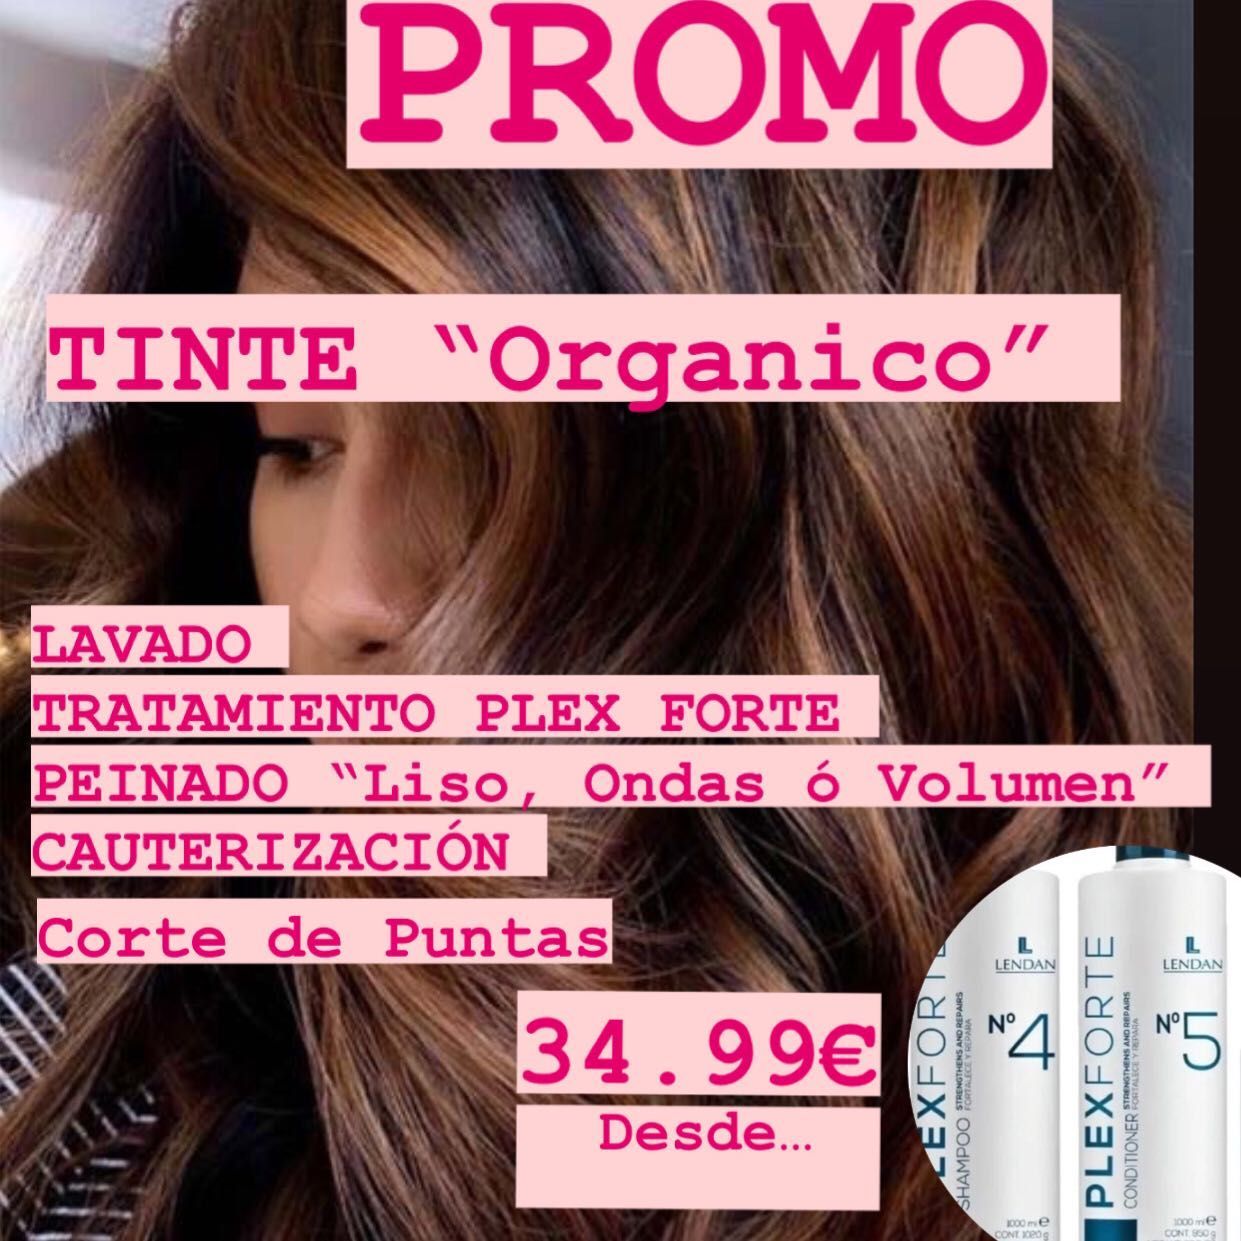 COLOR “Tinte Orgánico” + PLEXFORTE + Corte Punta portfolio